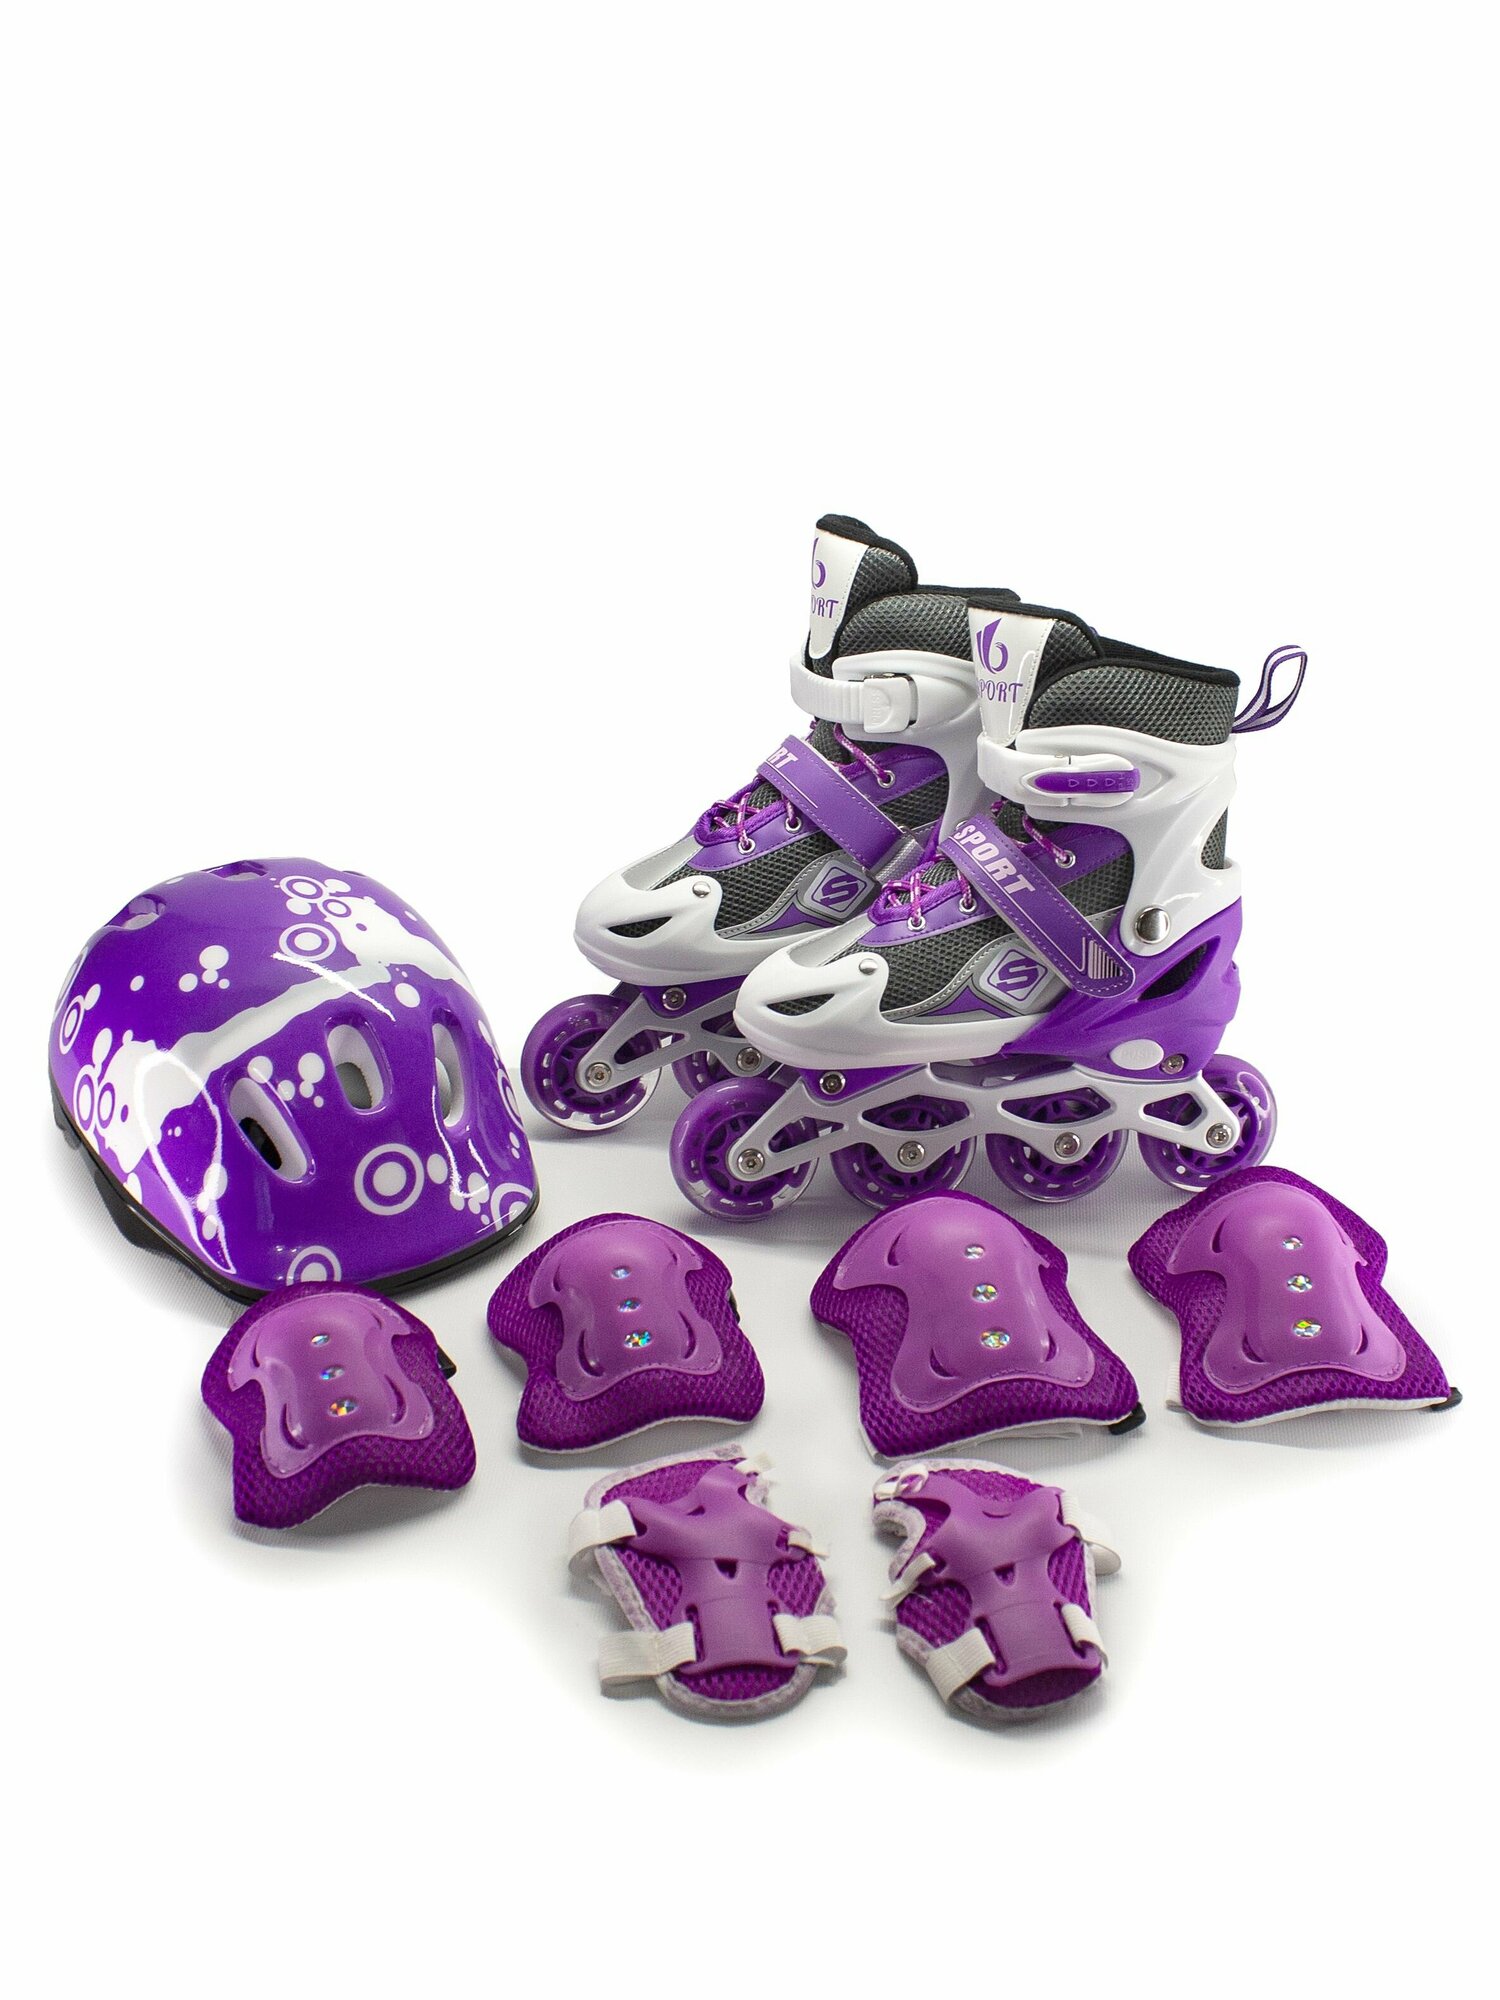 Фиолетовые раздвижные роликовые коньки, шлем, защита коленей, локтей, кистей, сумка, размер 27-30